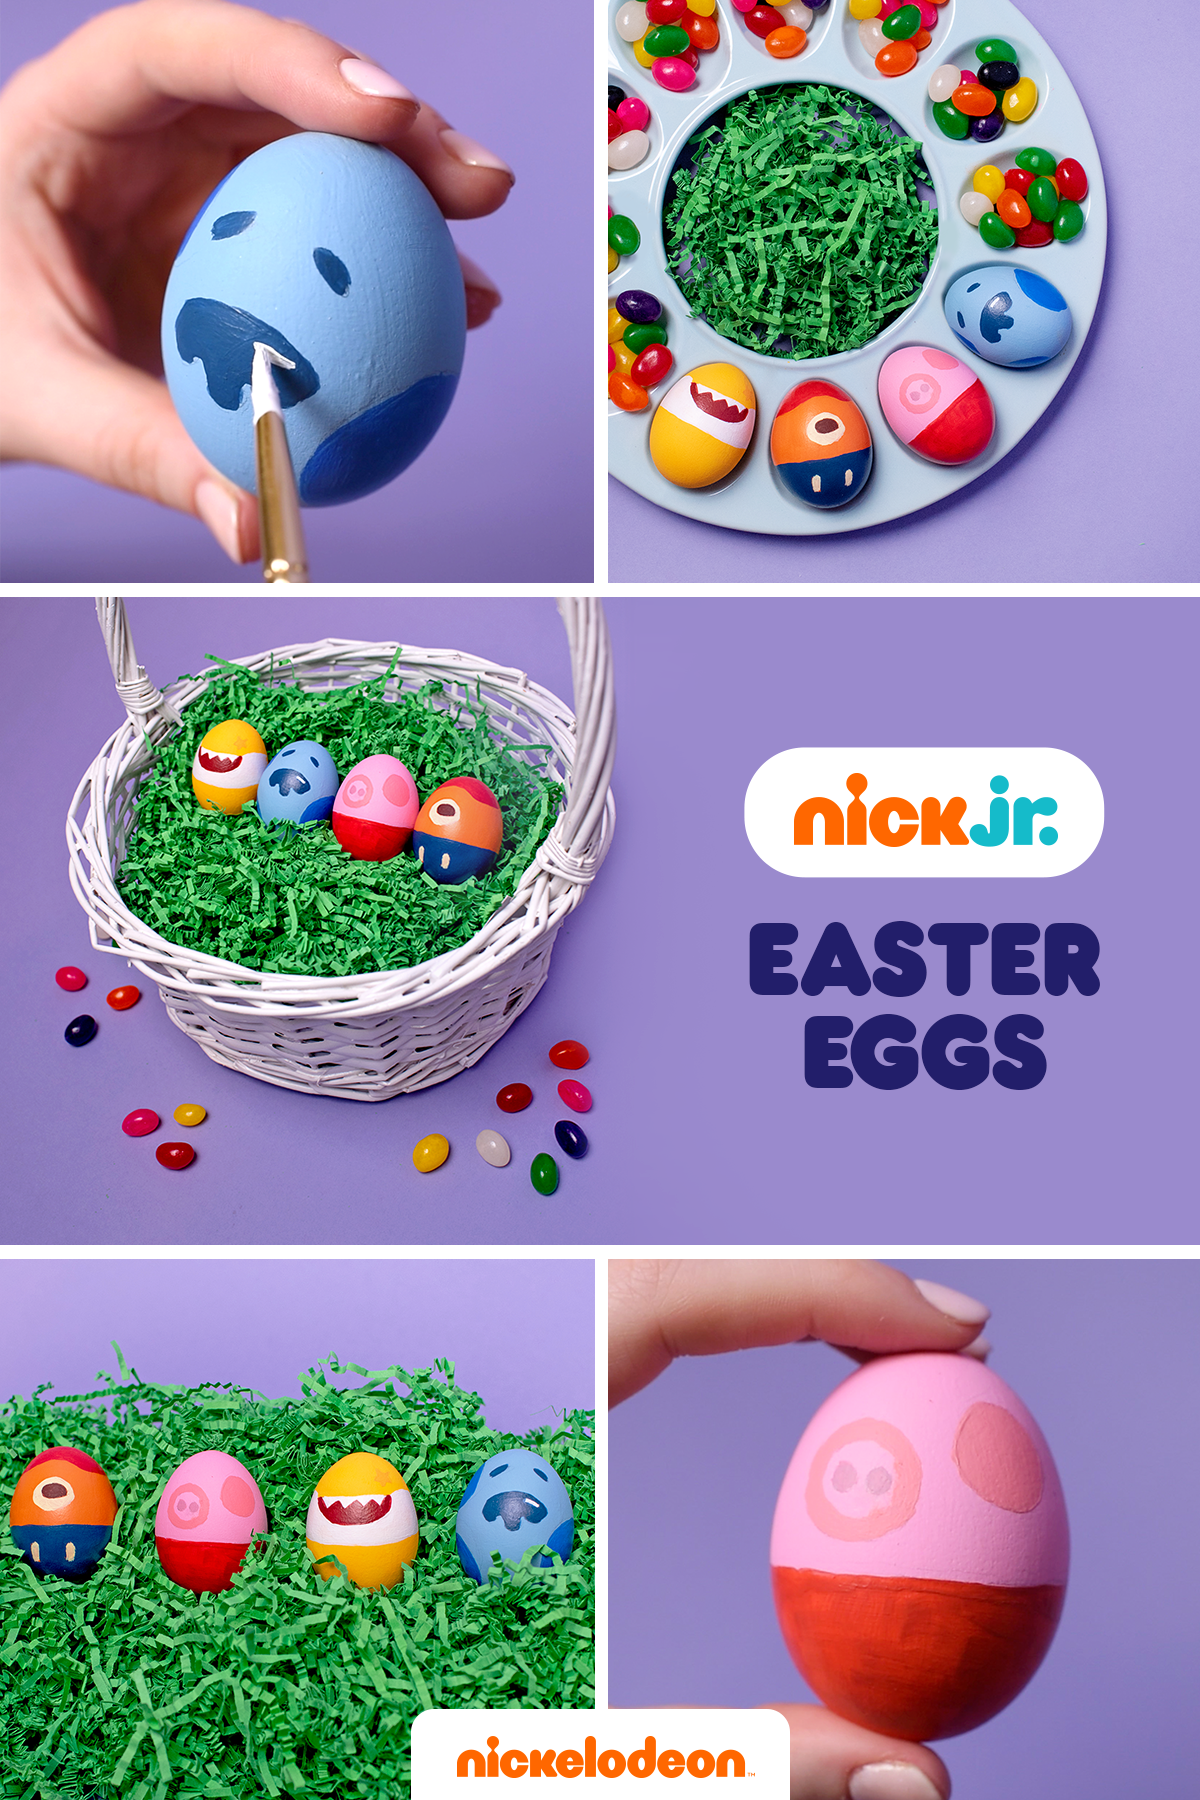 Nick Jr. Easter Eggs 2020